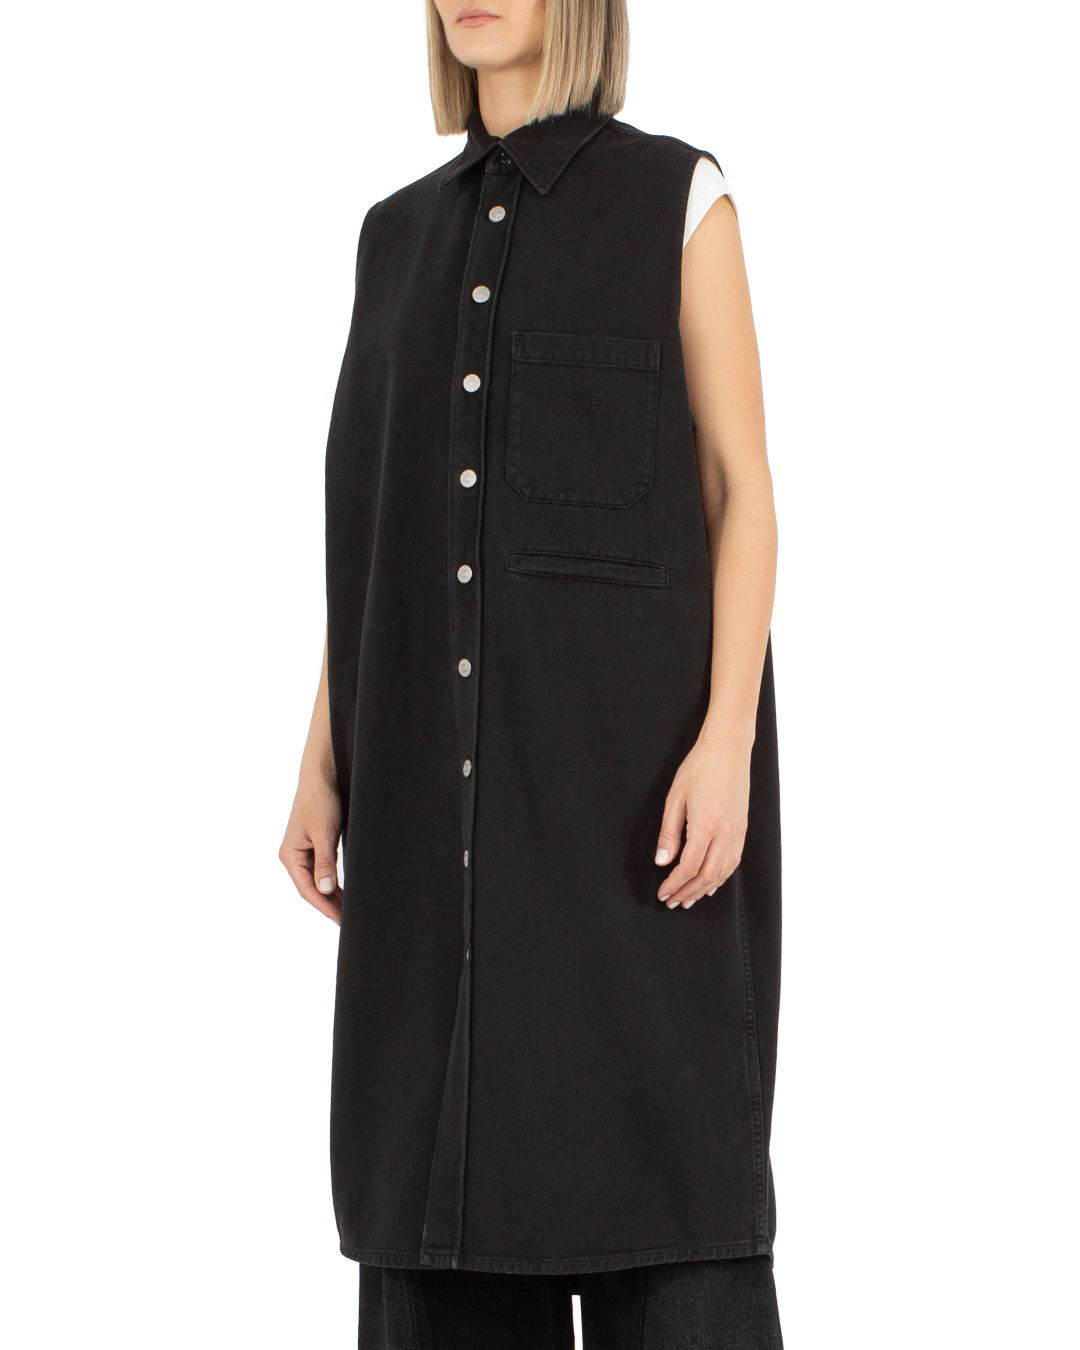 платье MM6 Maison Margiela S62DG0016 черный 40, размер 40 - фото 3